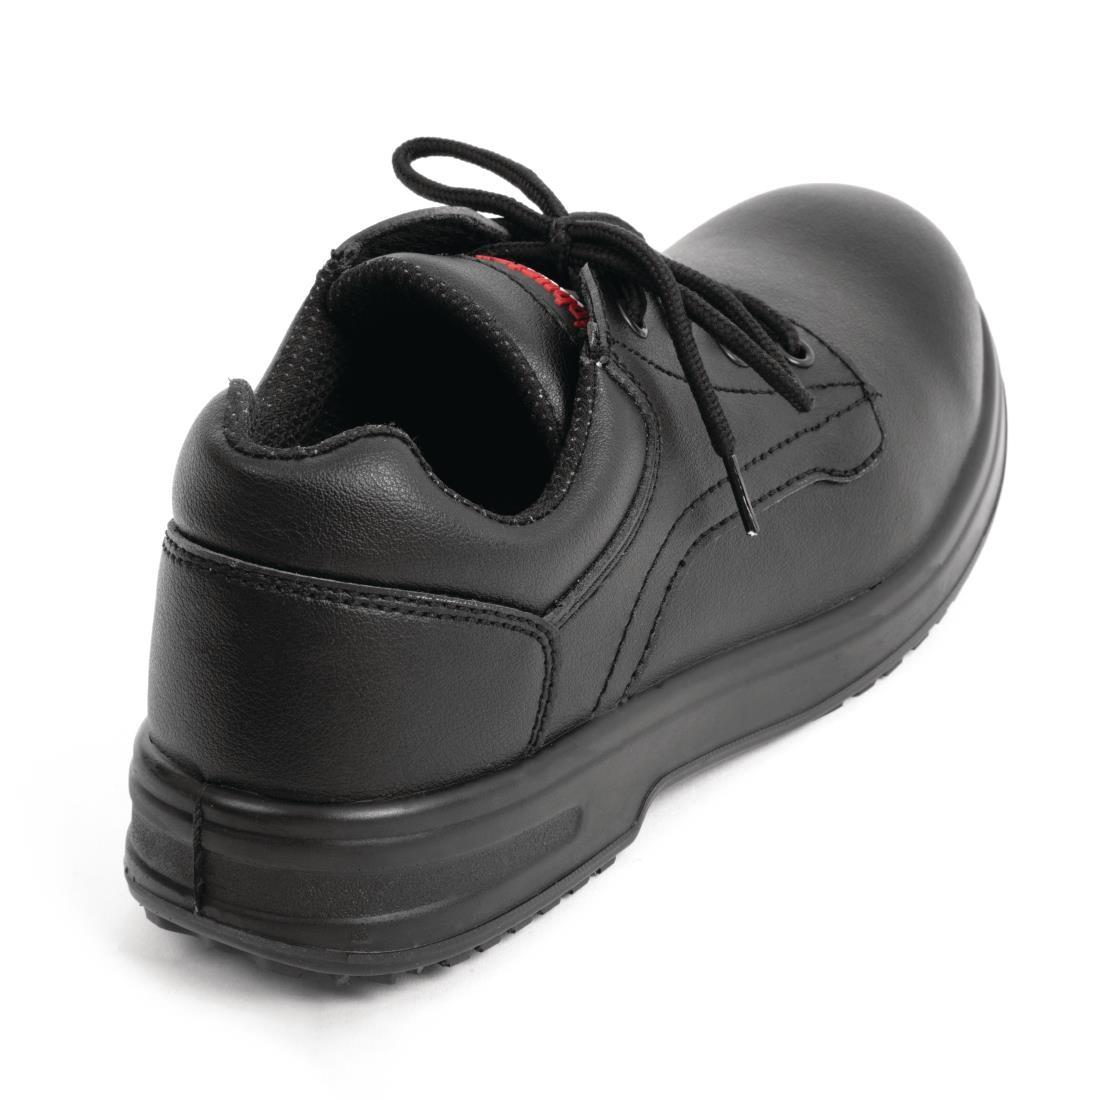 Slipbuster Basic Shoes Slip Resistant Black 38 - BB498-38  - 3